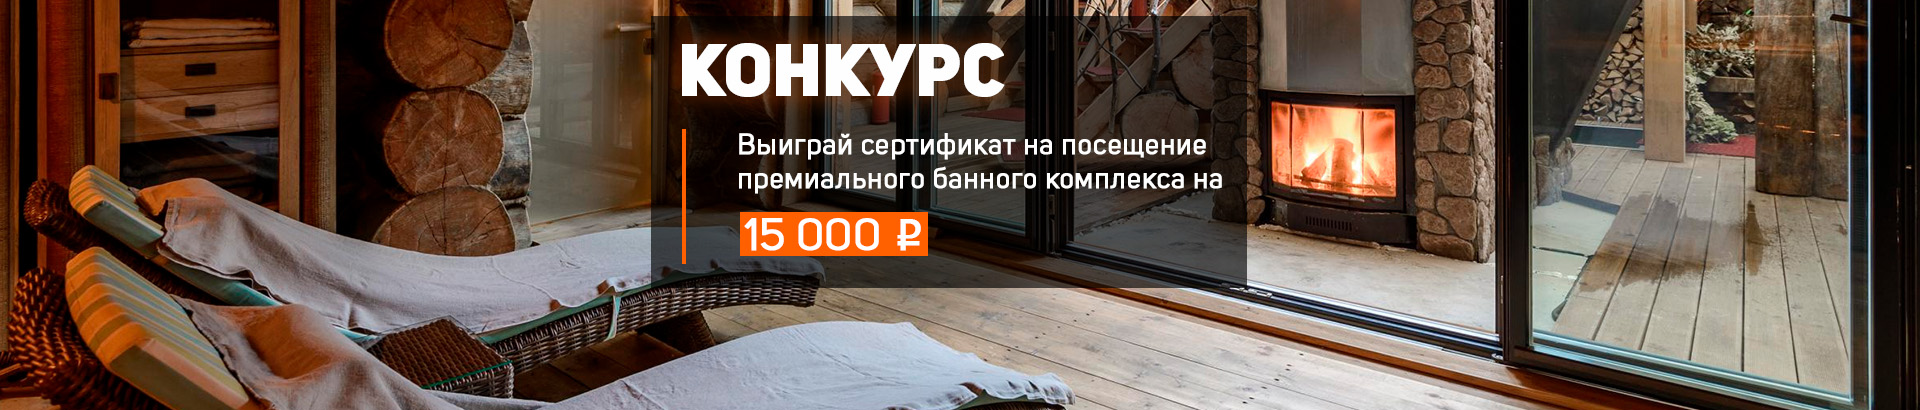 Разыгрываем сертификат на 15 000 рублей на посещение премиального банного комплекса в Санкт-Петербурге!